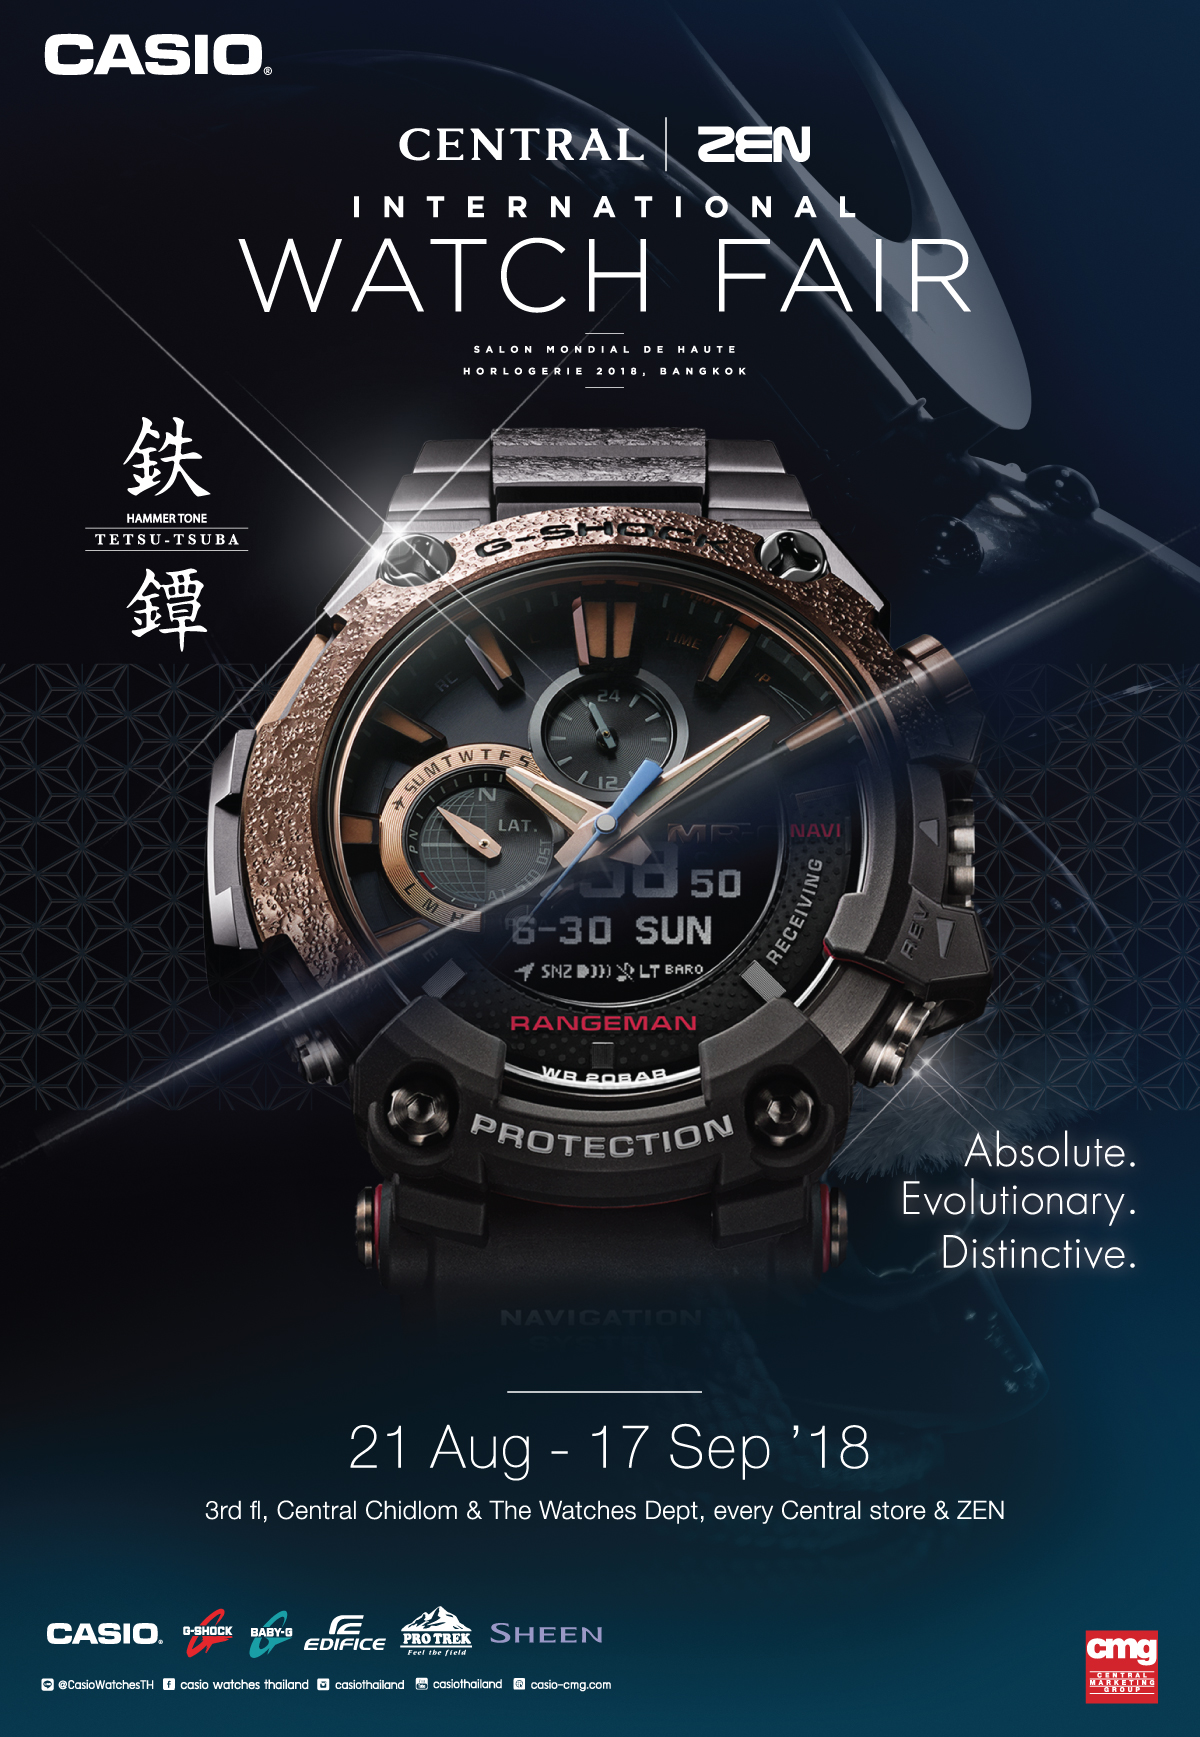 CASIO G SHOCK Central International Watch Fair 2018